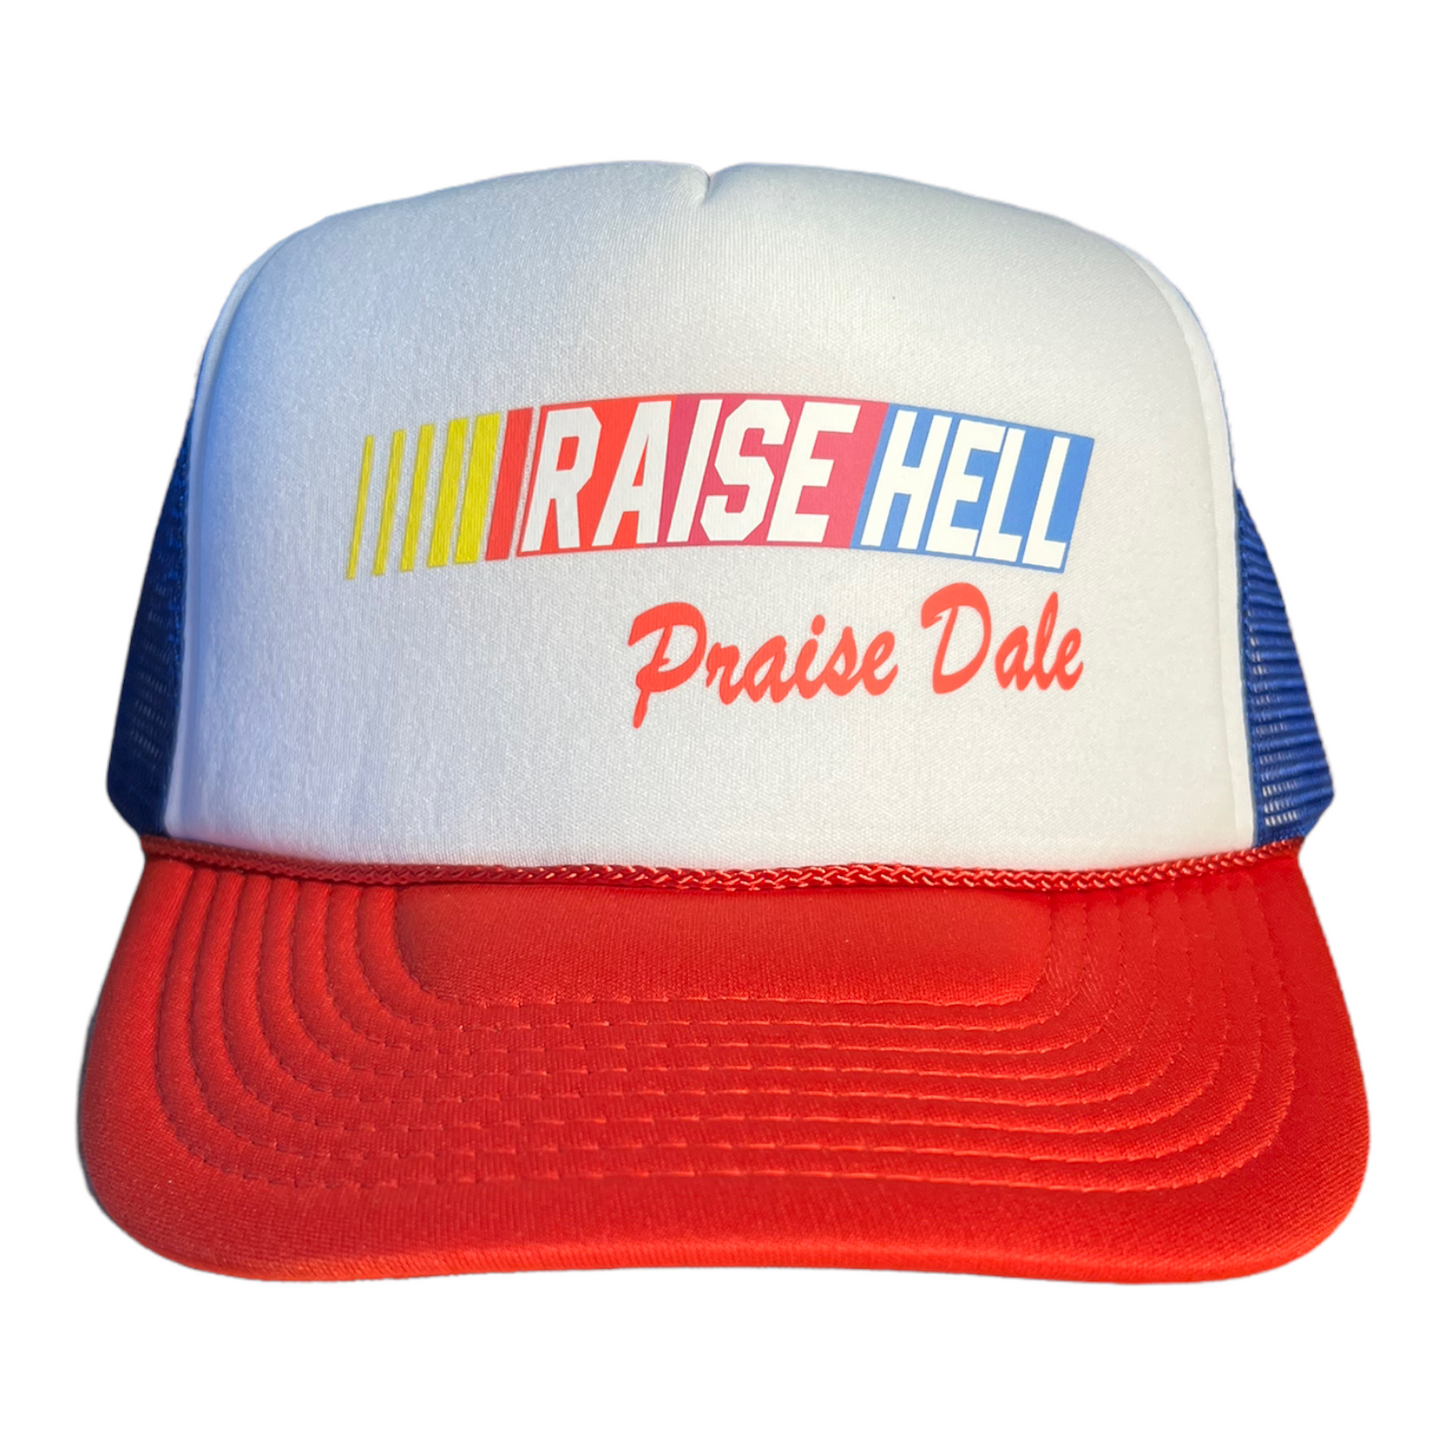 Raise Hell Praise Dale Trucker Hat Funny Trucker Hat Red/White/Blue